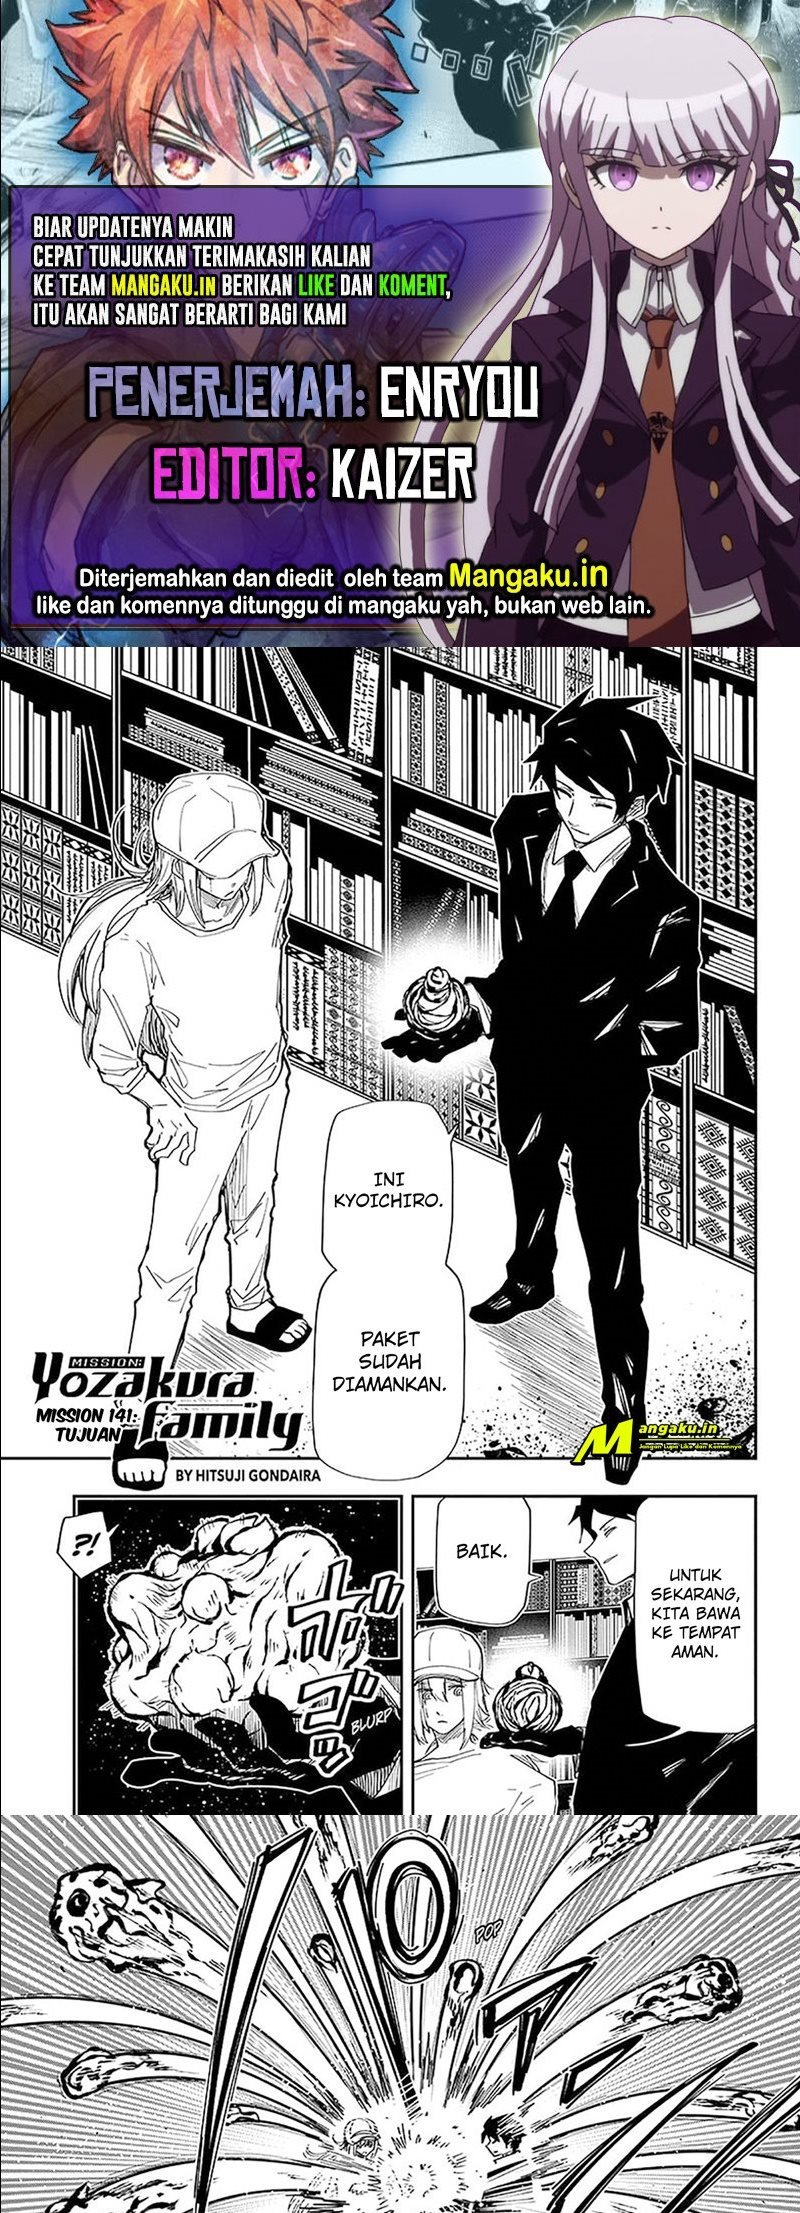 Mission: Yozakura Family Chapter 141 - 73